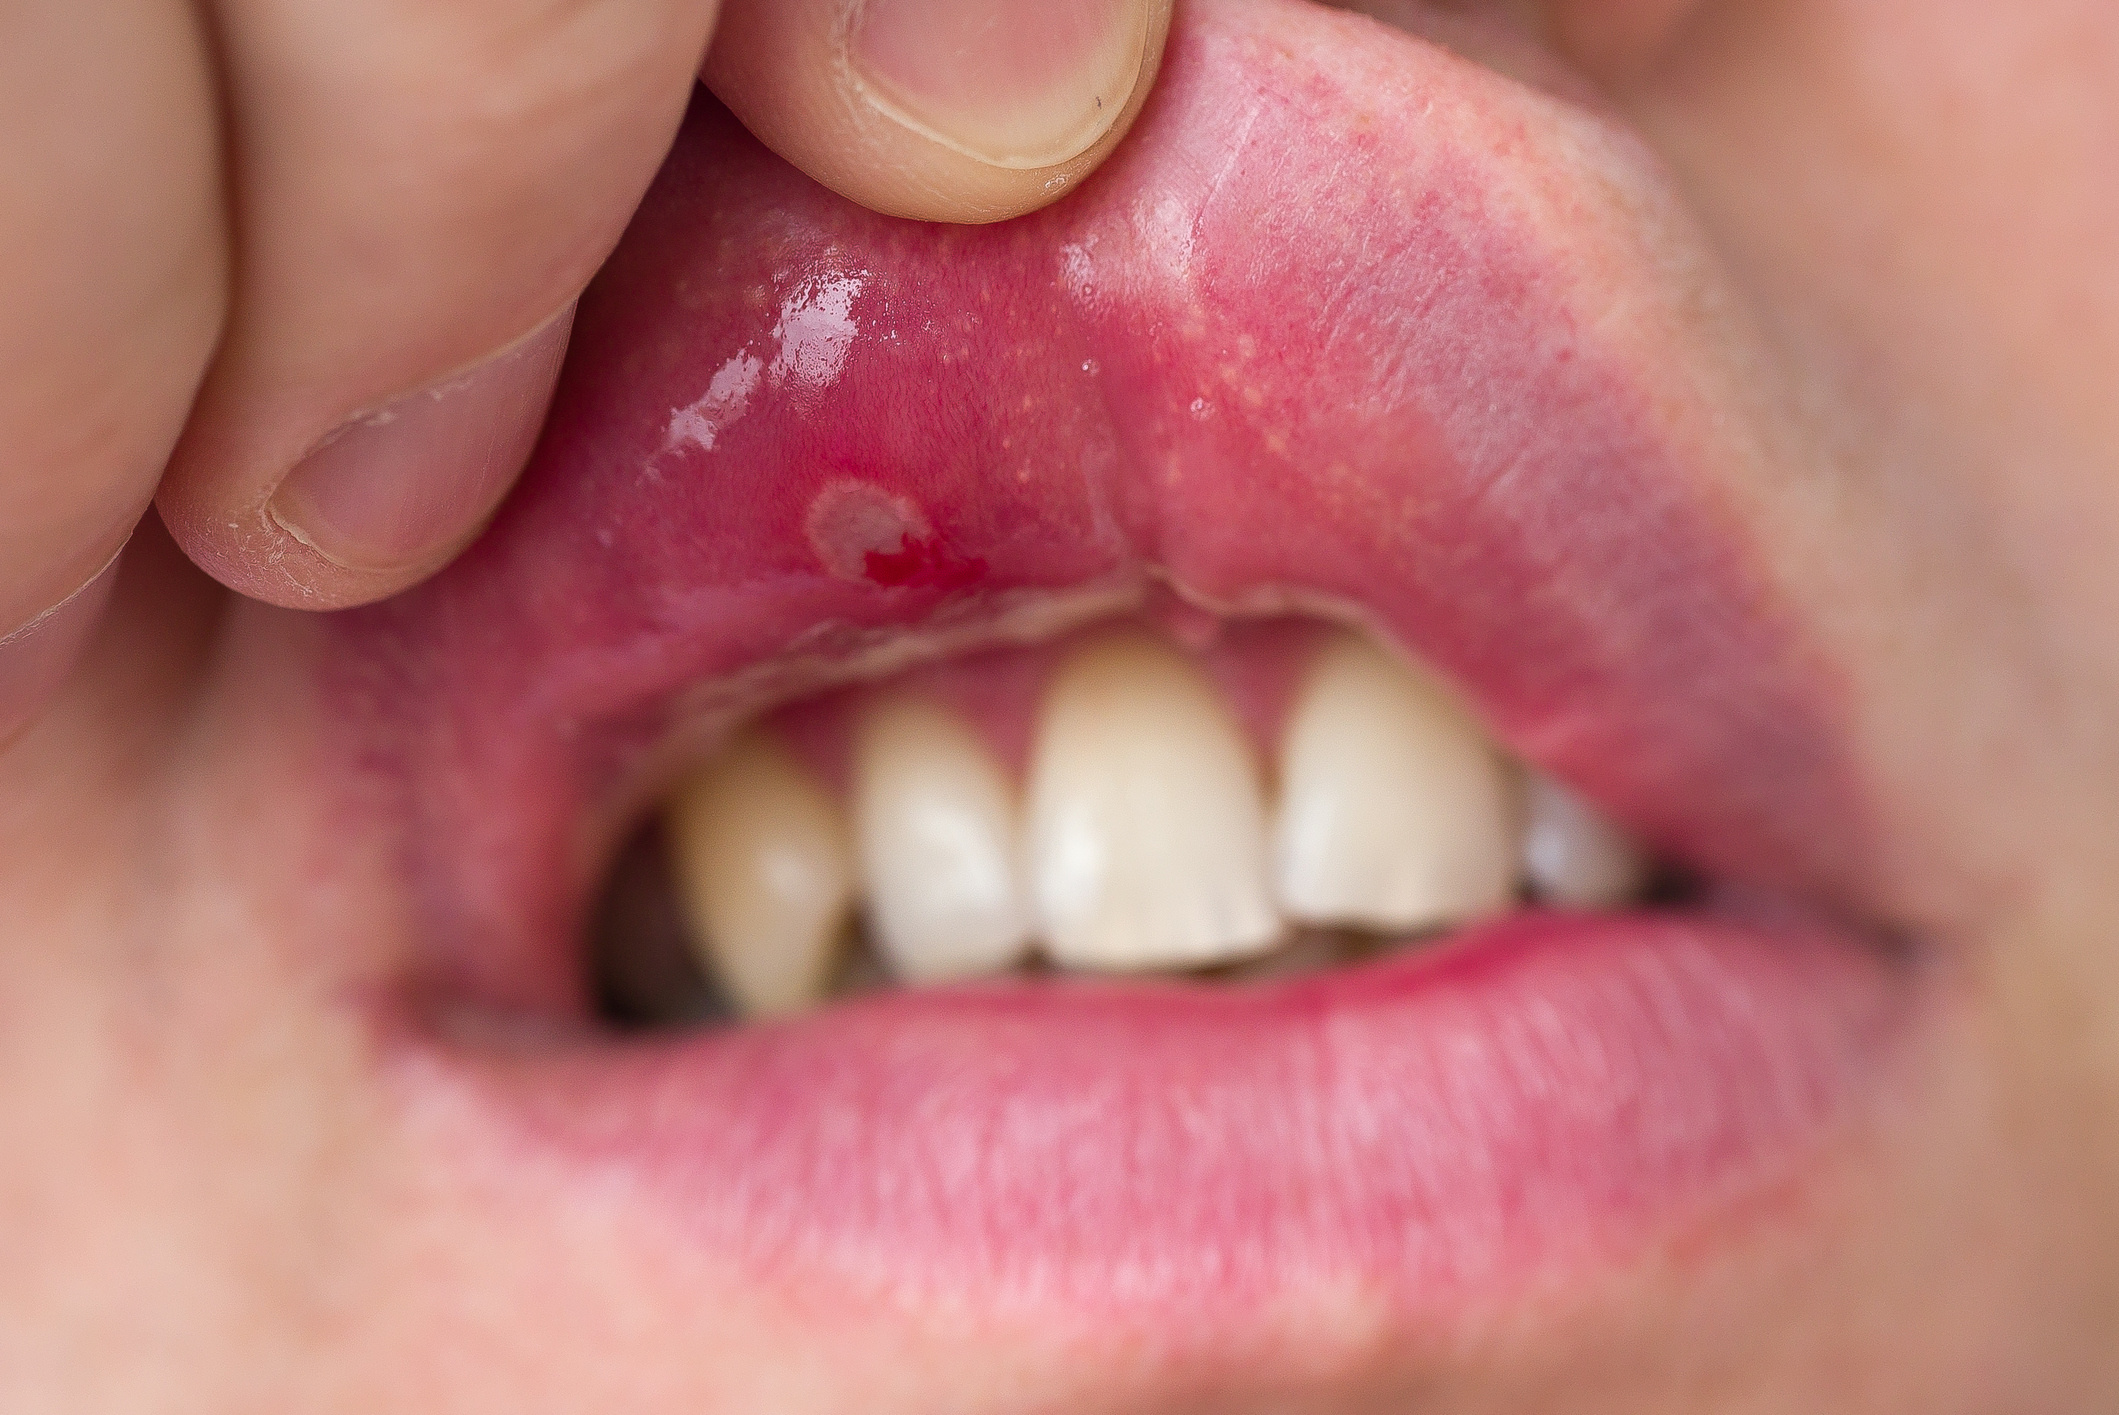 vörös foltok a szájban a szájban, mint kezelni krónikus pikkelysömör kezelése